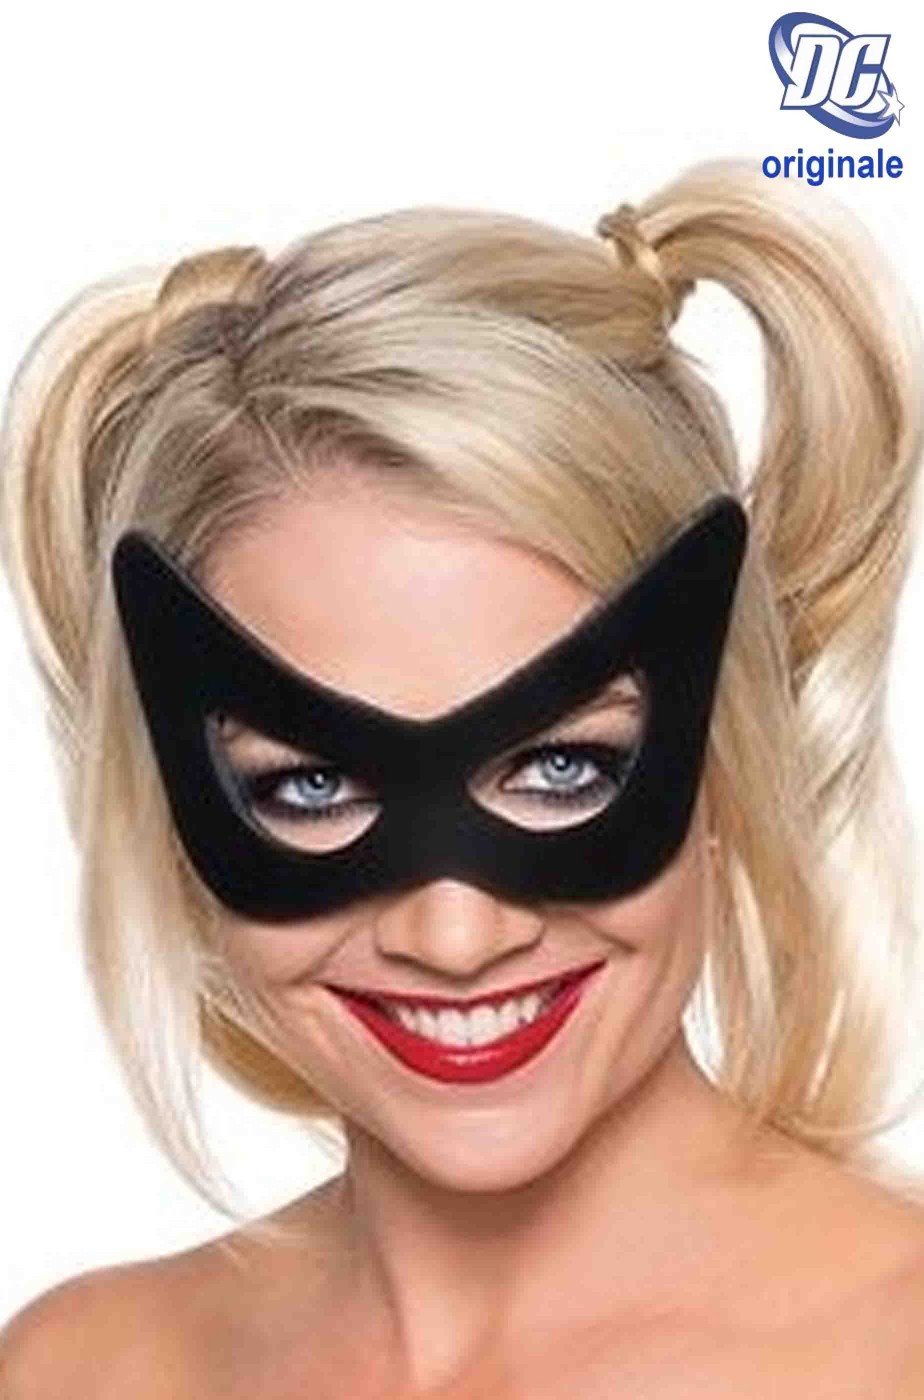 Funidelia | Costume Harley Quinn per bambina Supereroi, DC Comics, Suicide  Squad - Costume per Bambini e accessori per Feste, Carnevale e Halloween 